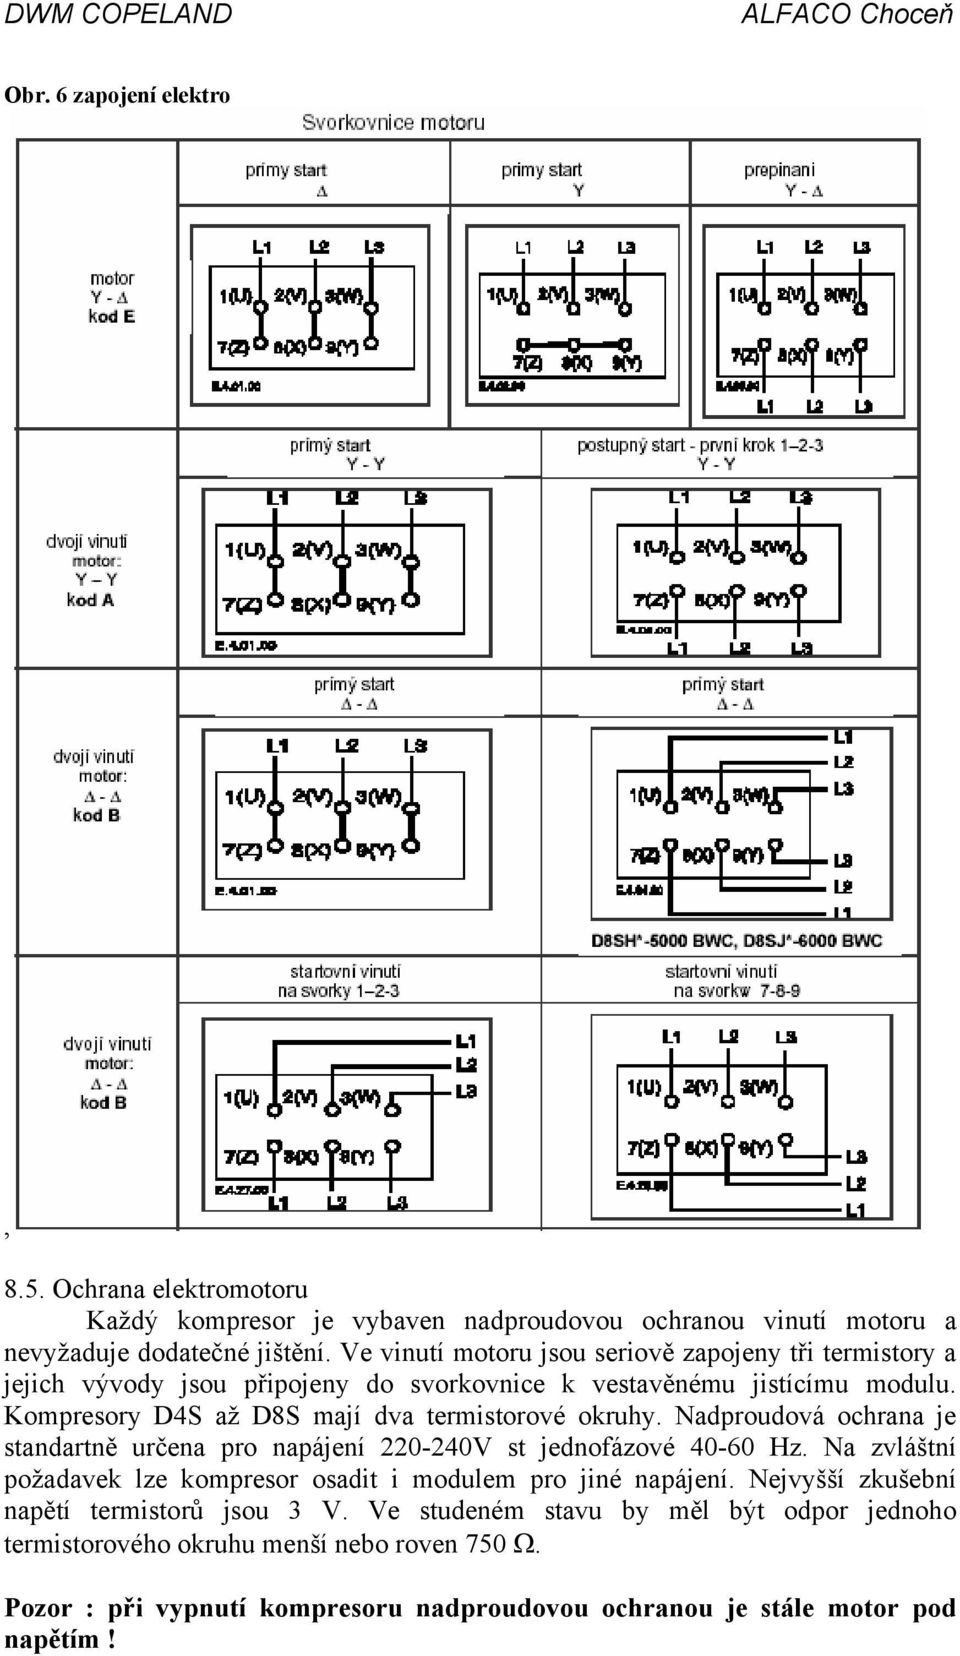 Kompresory D4S až D8S mají dva termistorové okruhy. Nadproudová ochrana je standartně určena pro napájení 220-240V st jednofázové 40-60 Hz.